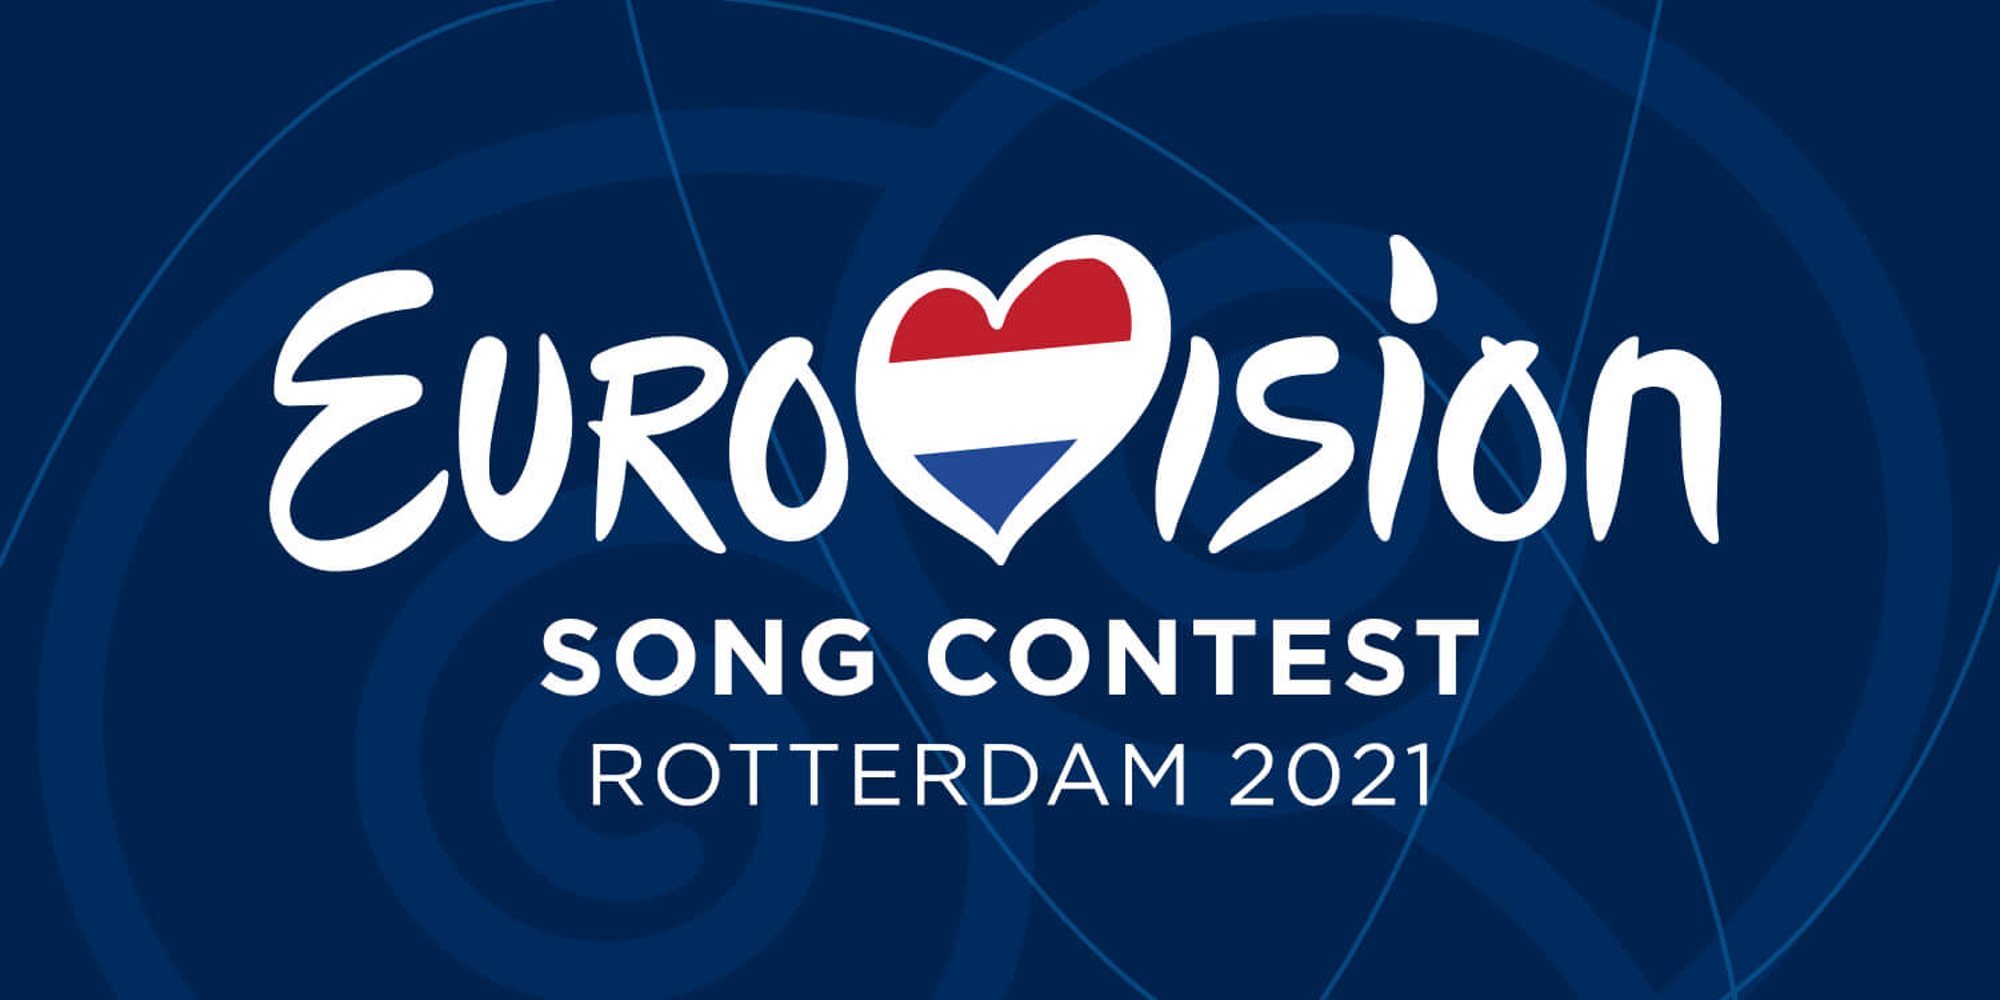 Clasificación del Festival de Eurovisión 2021: Resultados de las votaciones